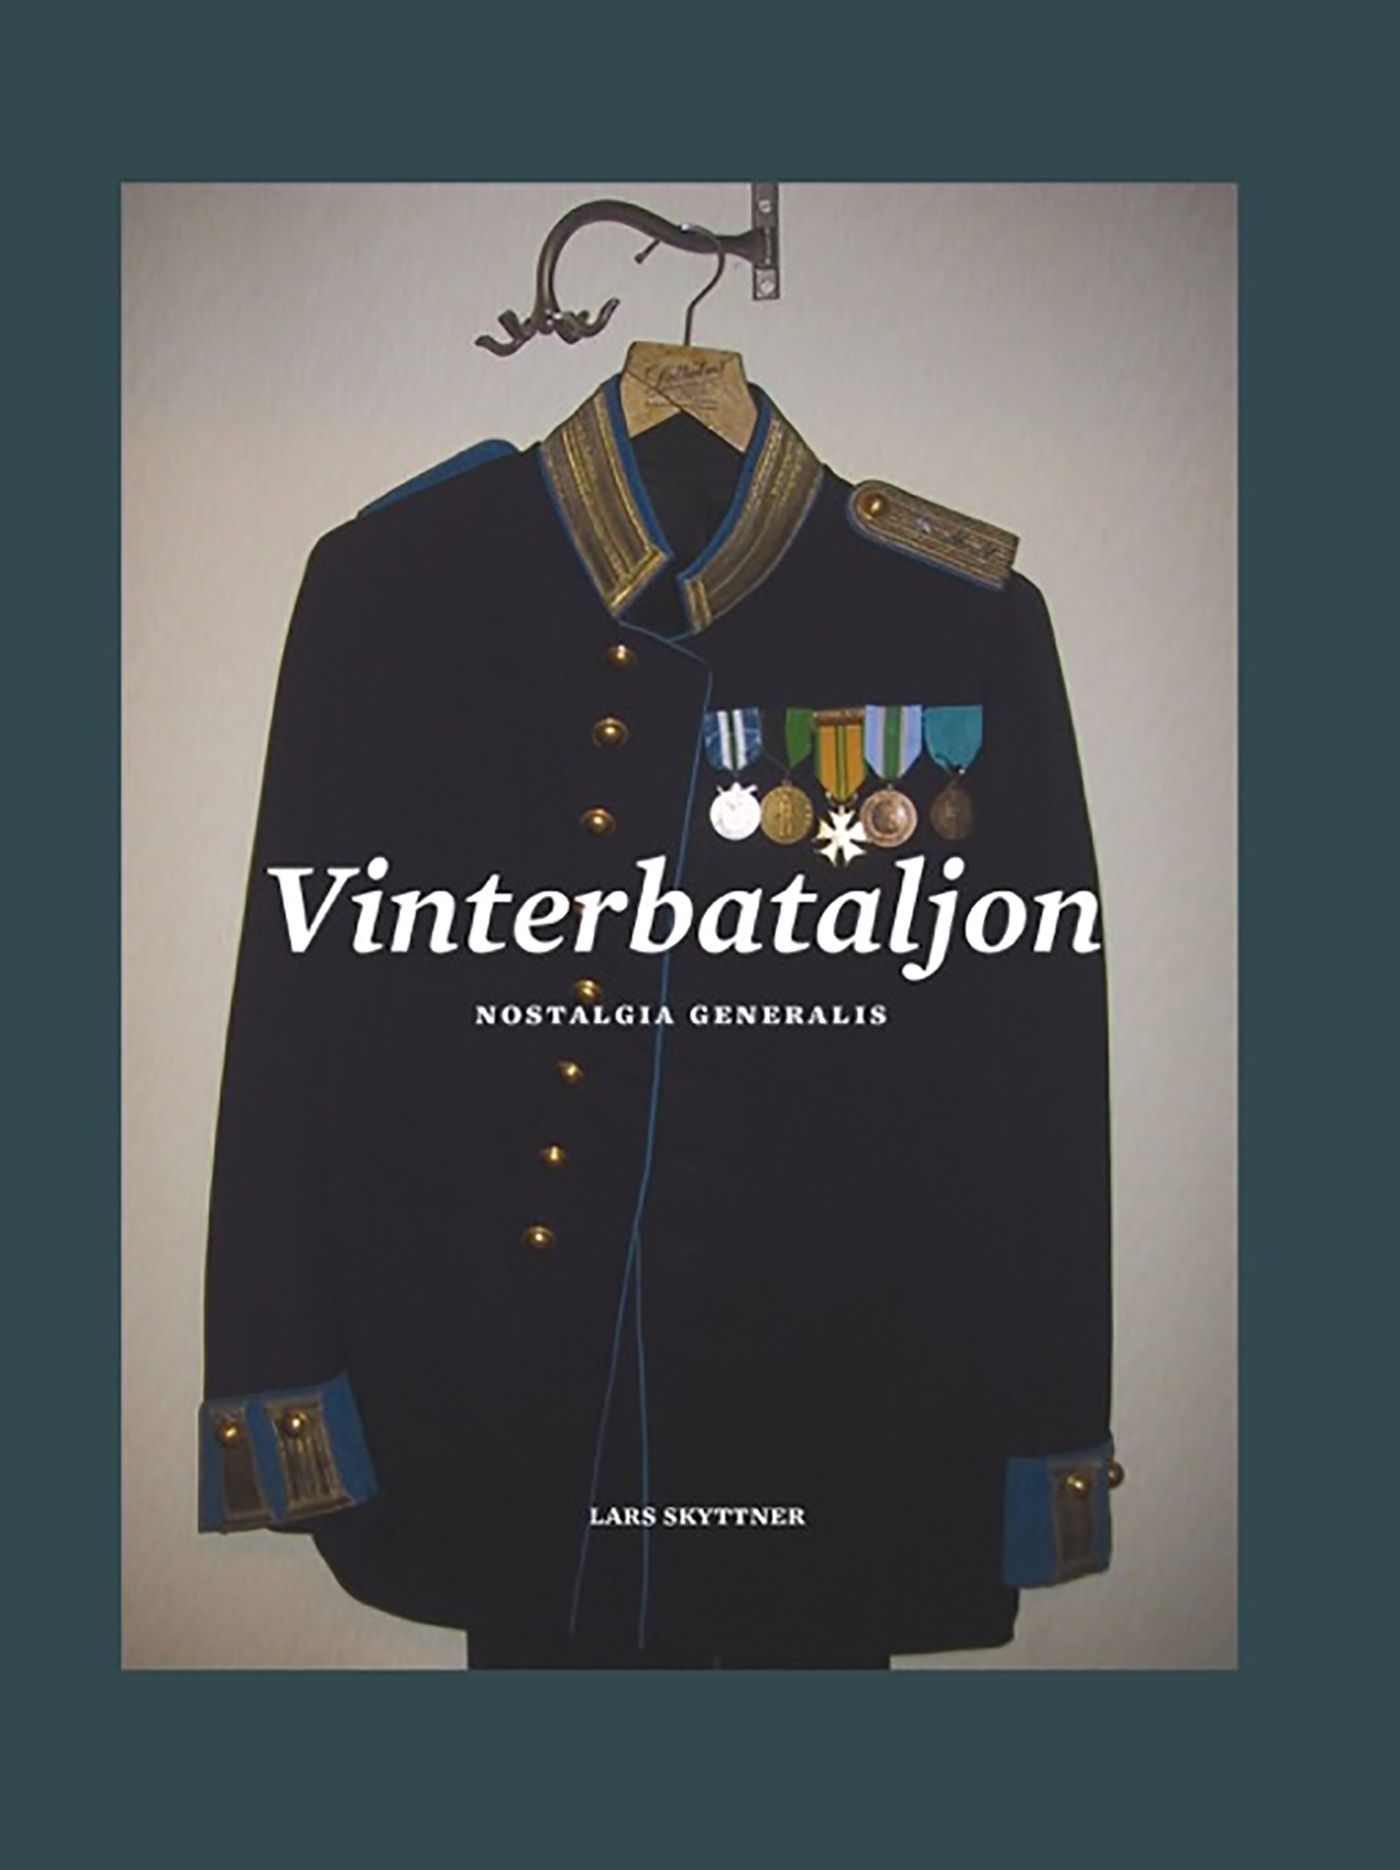 Vinterbataljon, eBook by Lars Skyttner